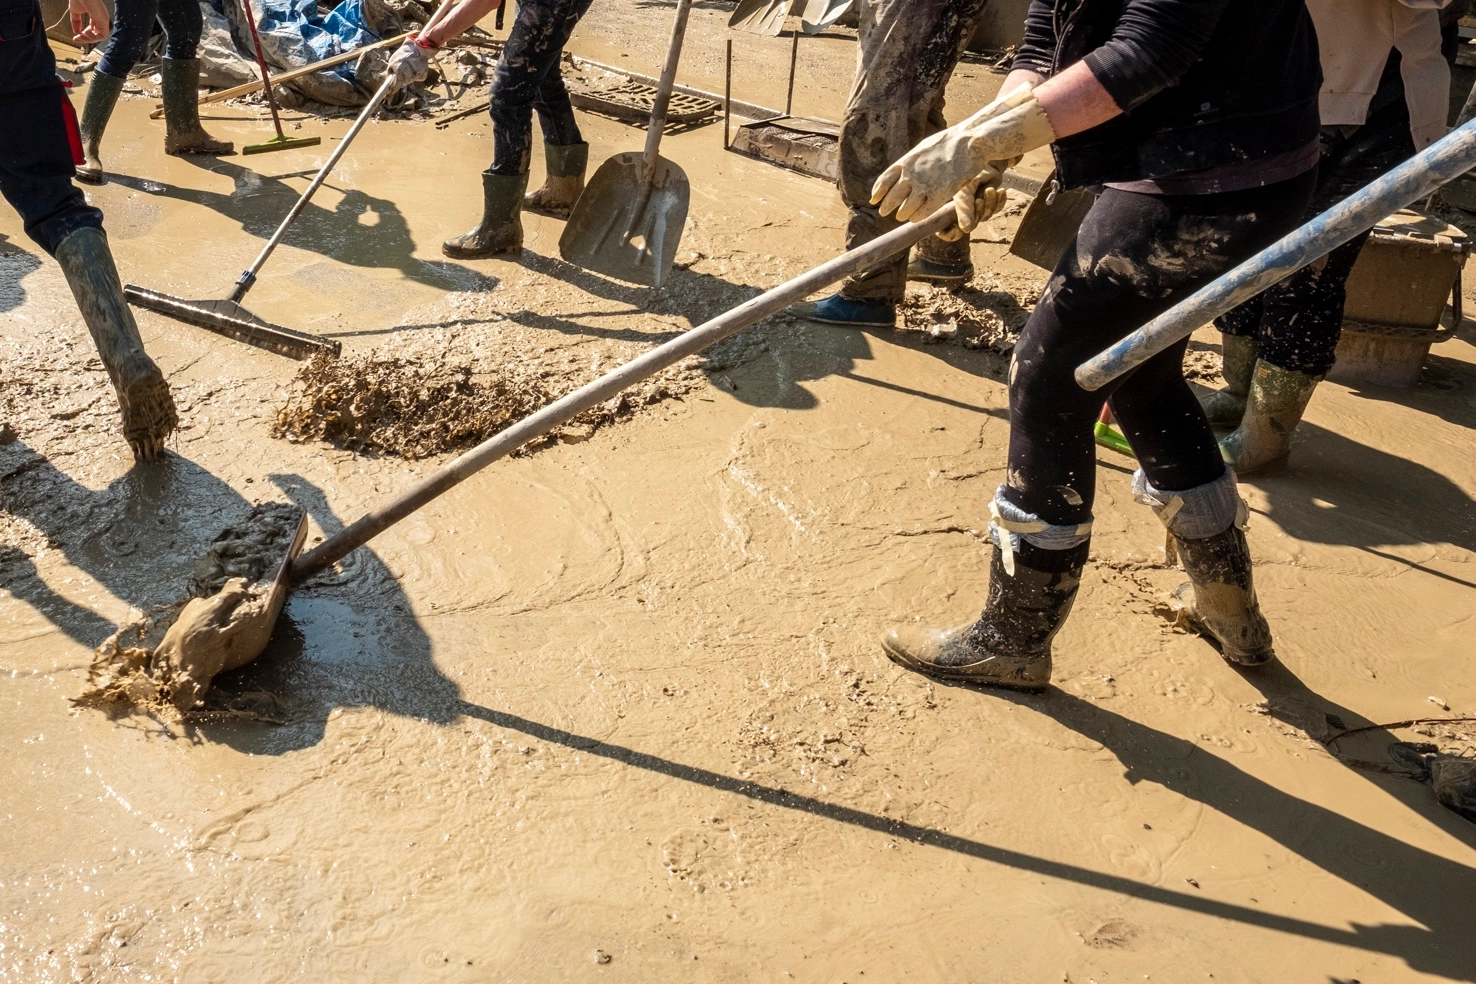 Volontari del fango in azione: in mezzo si sono nascosti gli sciacalli